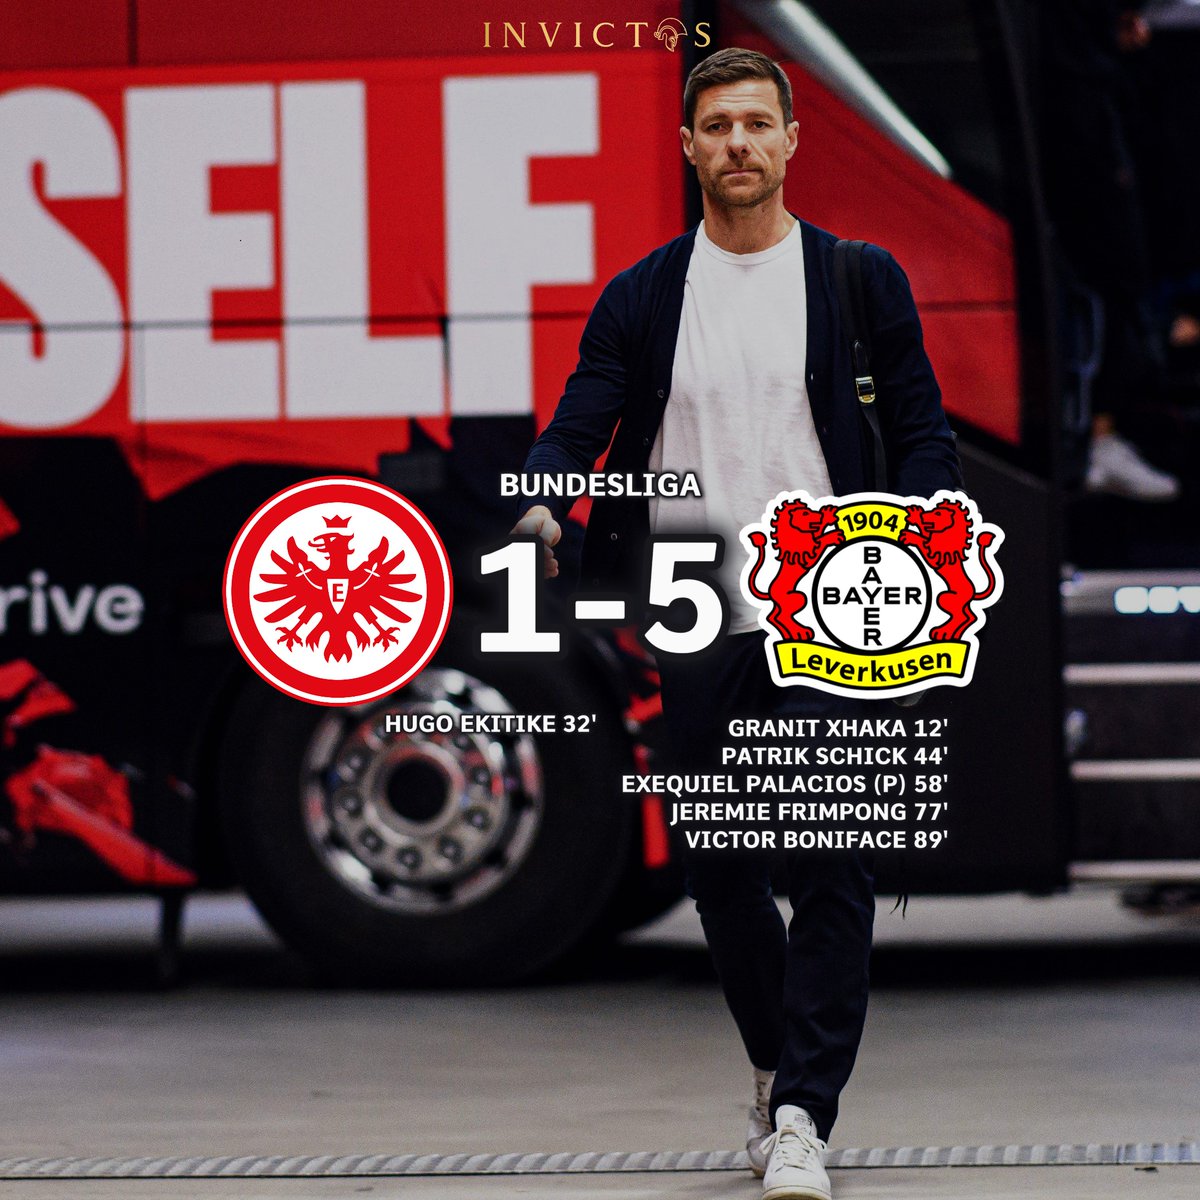 ¡¡ÚLTIMA HORA!! Bayer Leverkusen le abrió una MANITA al Eintracht Frankfurt en la Bundesliga. El campeón de Alemania simplemente no puede dejar de ganar. Ya llevan ¡¡48 PARTIDOS INVICTOS!! en la presente temporada. La mejor racha en toda la historia del fútbol TOP de Europa sigue